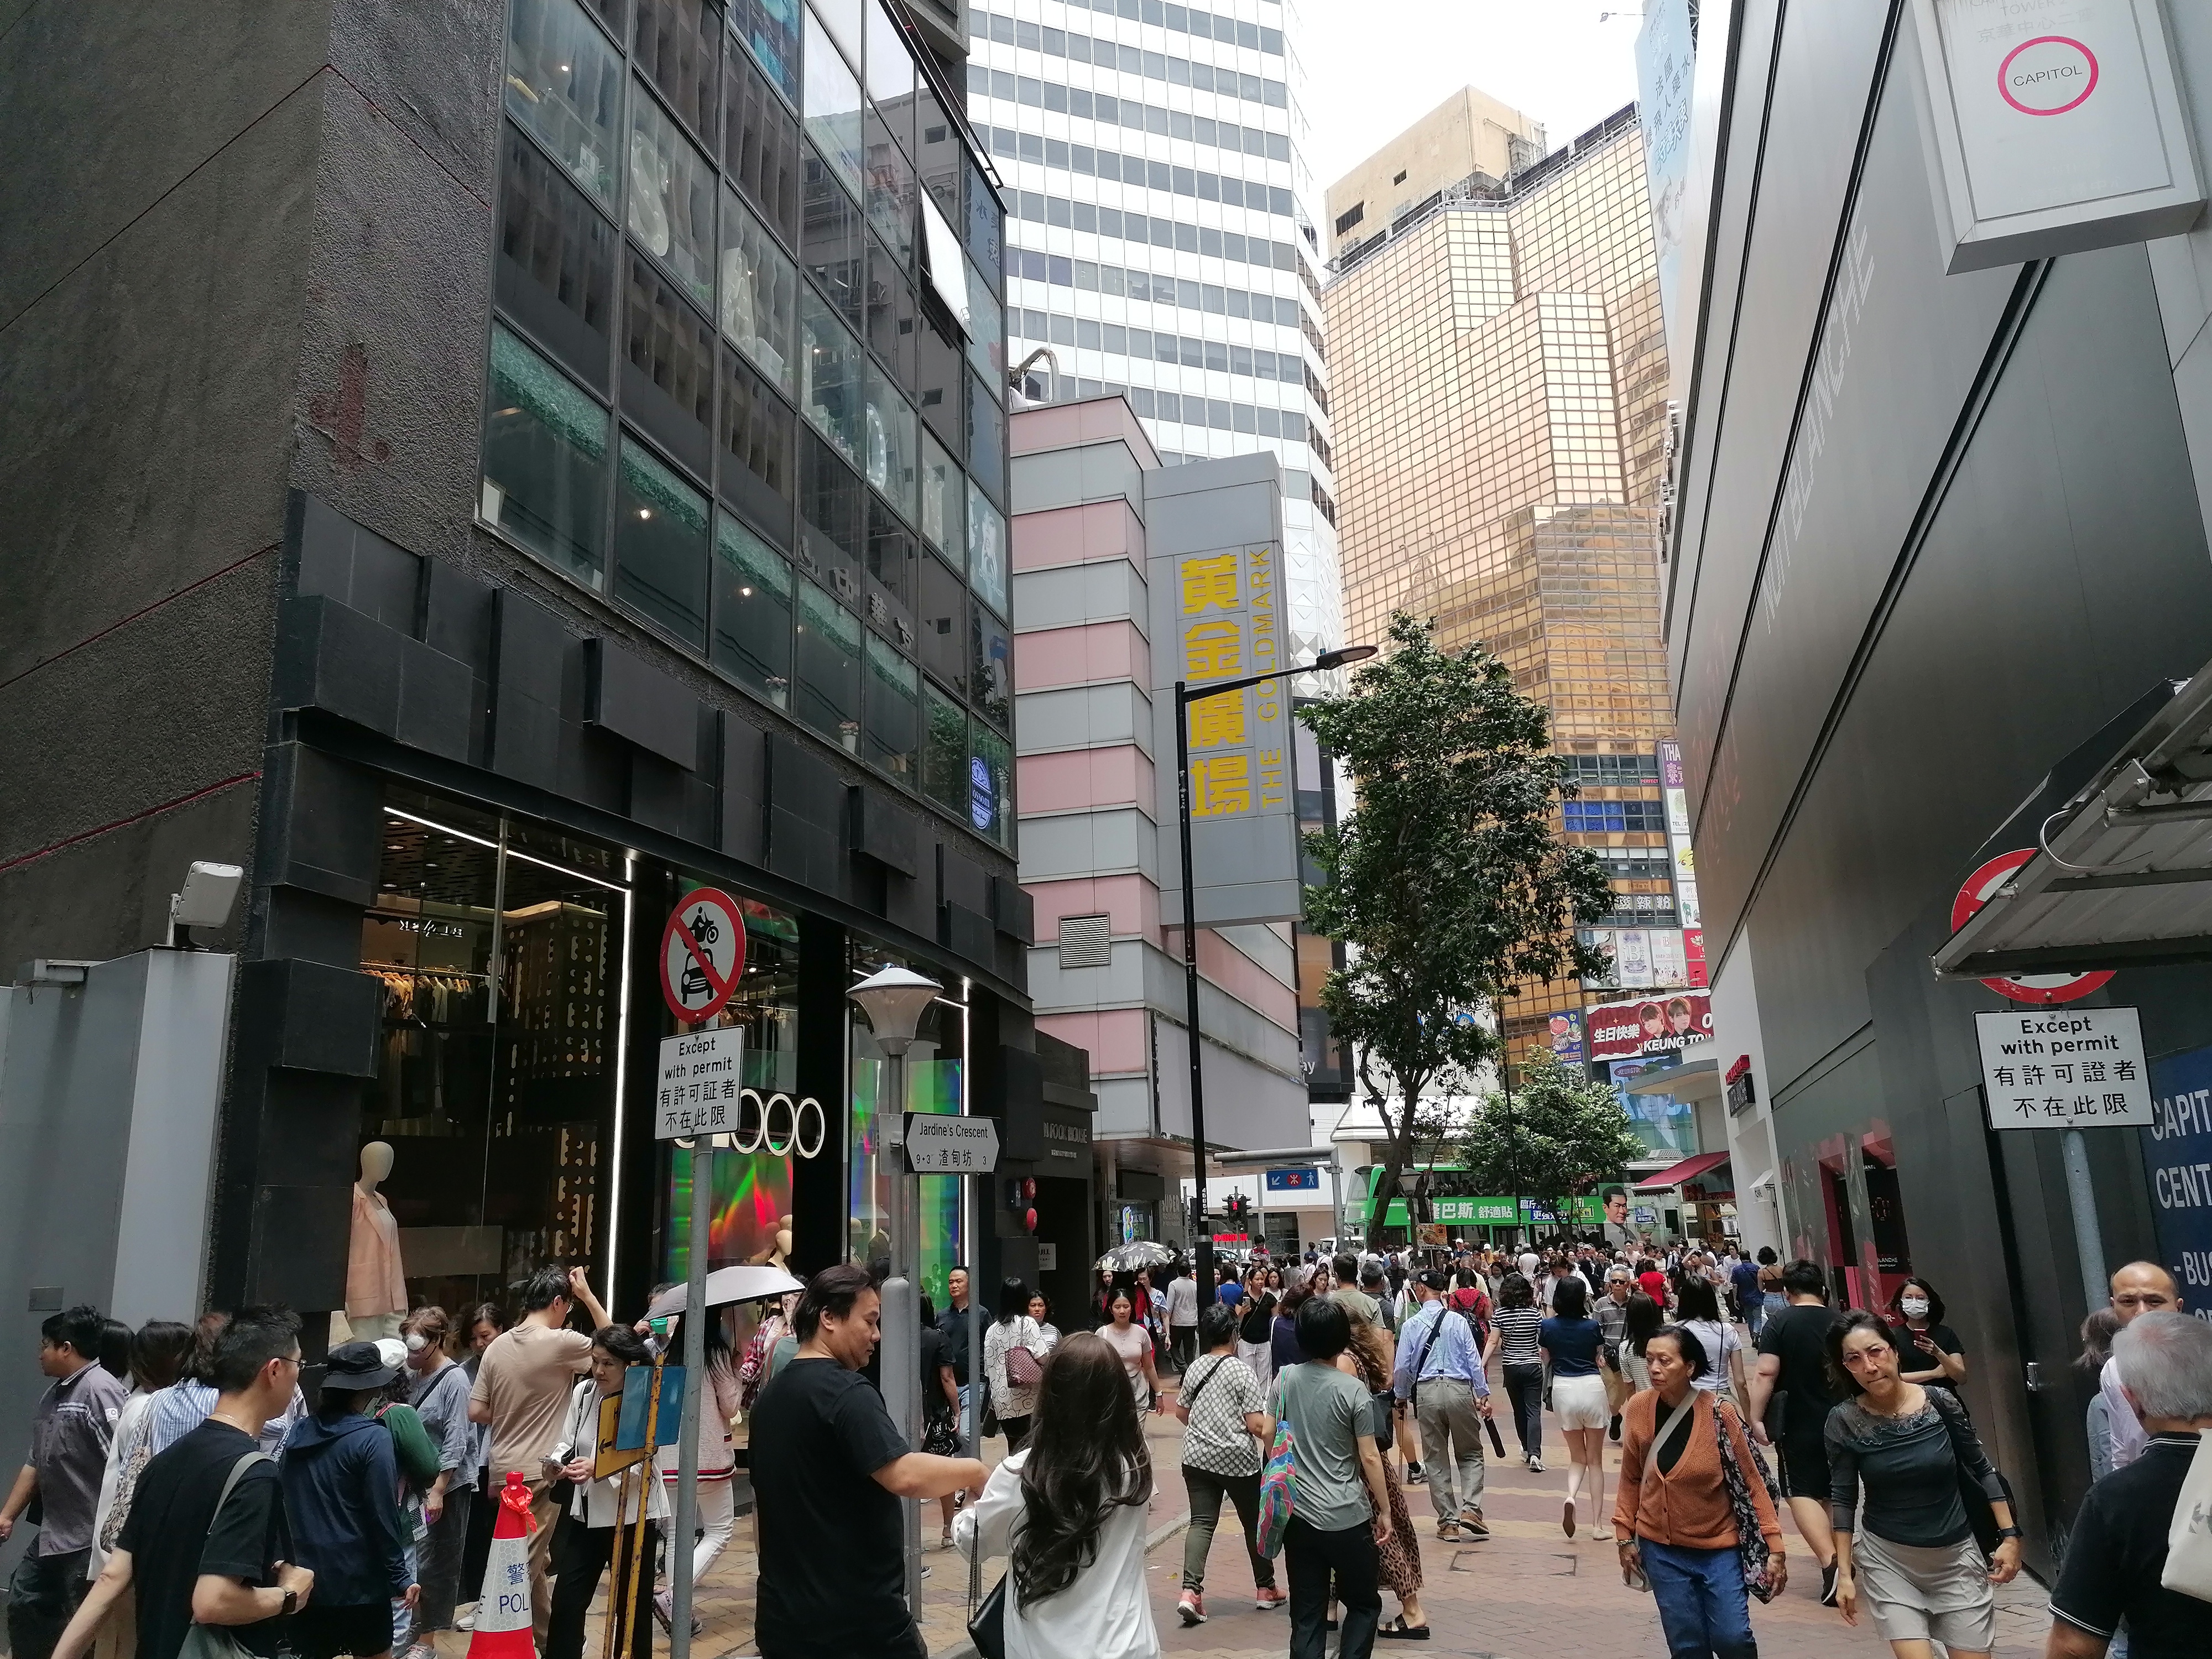 香港中小型企业联合会及腾龙青年商会近日发布今年最新「香港中小企营商状况调查」指出，由于港人北上消费增加影响中小企生意额，其中有近7成反映生意额较疫情之前下降。(中通社)